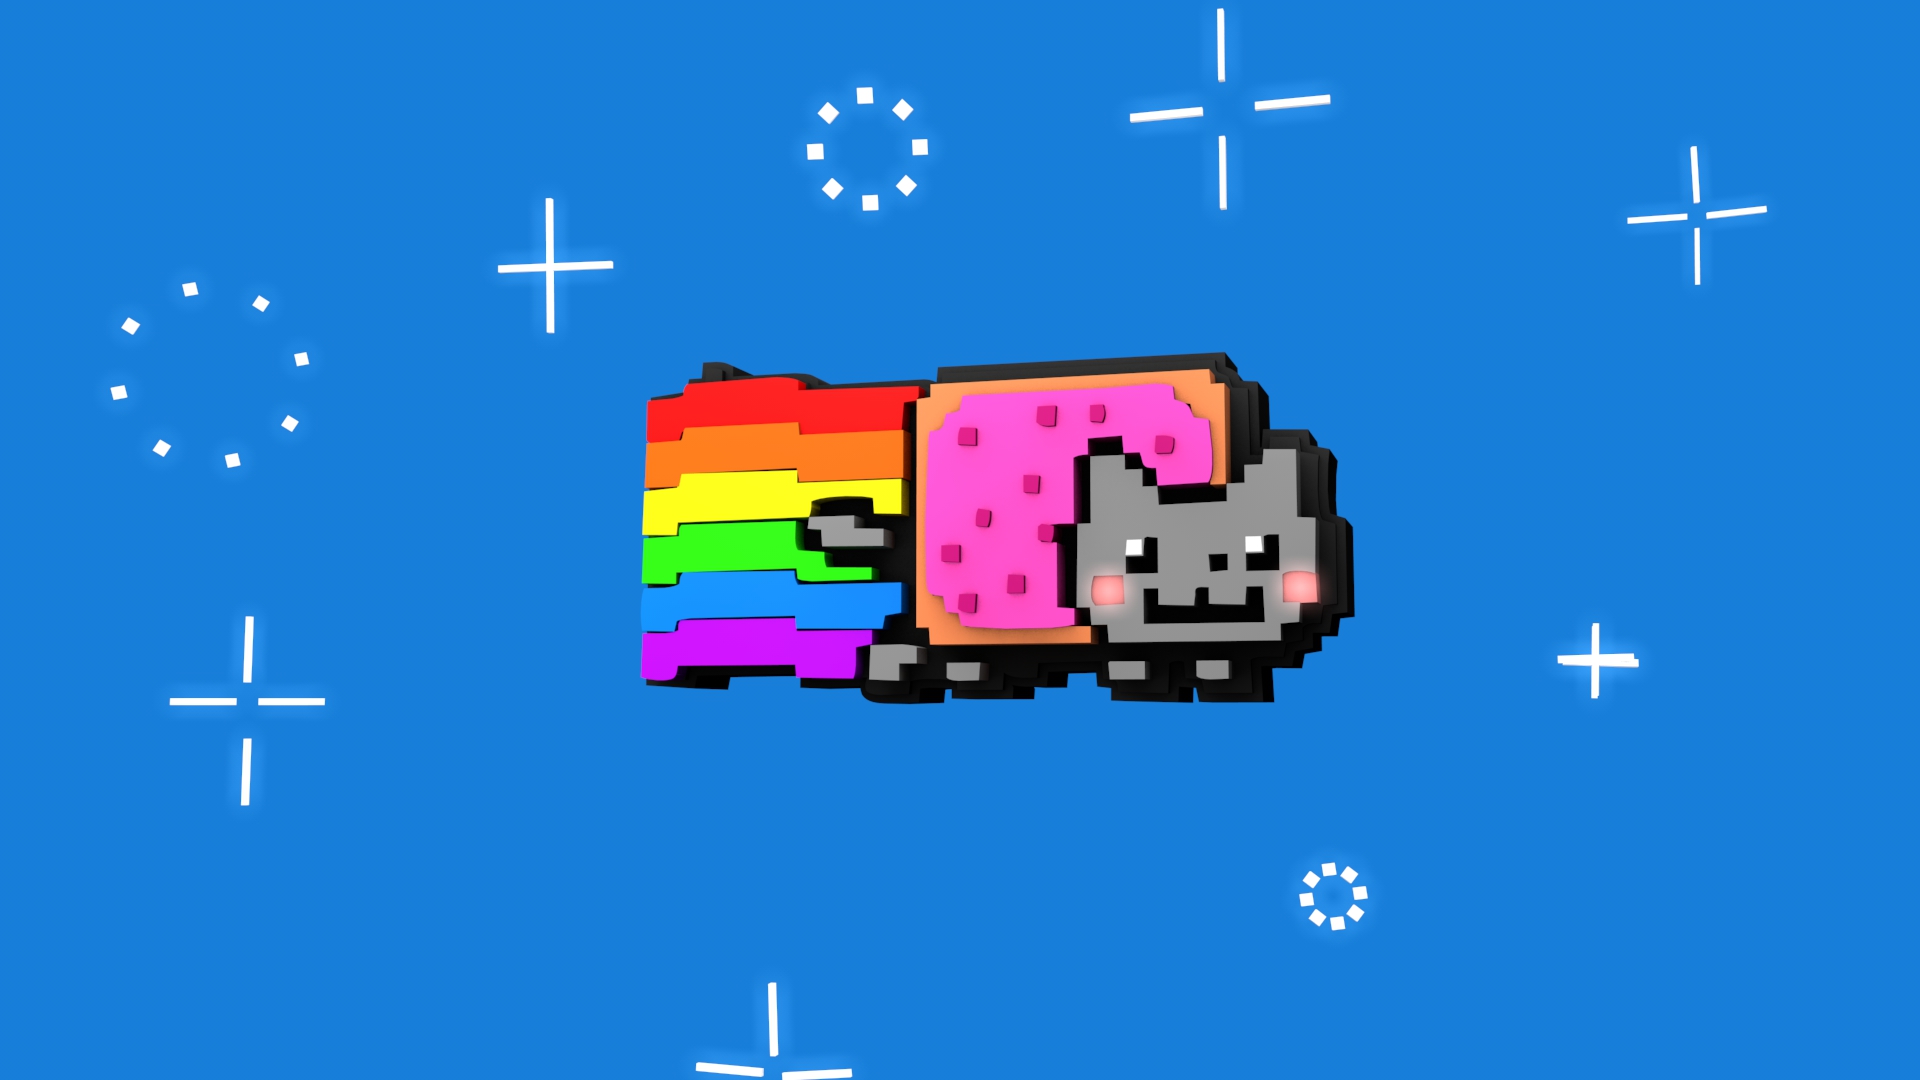 Download the Nyan Cat Wallpaper, Nyan Cat iPhone Wallpaper, Nyan ...